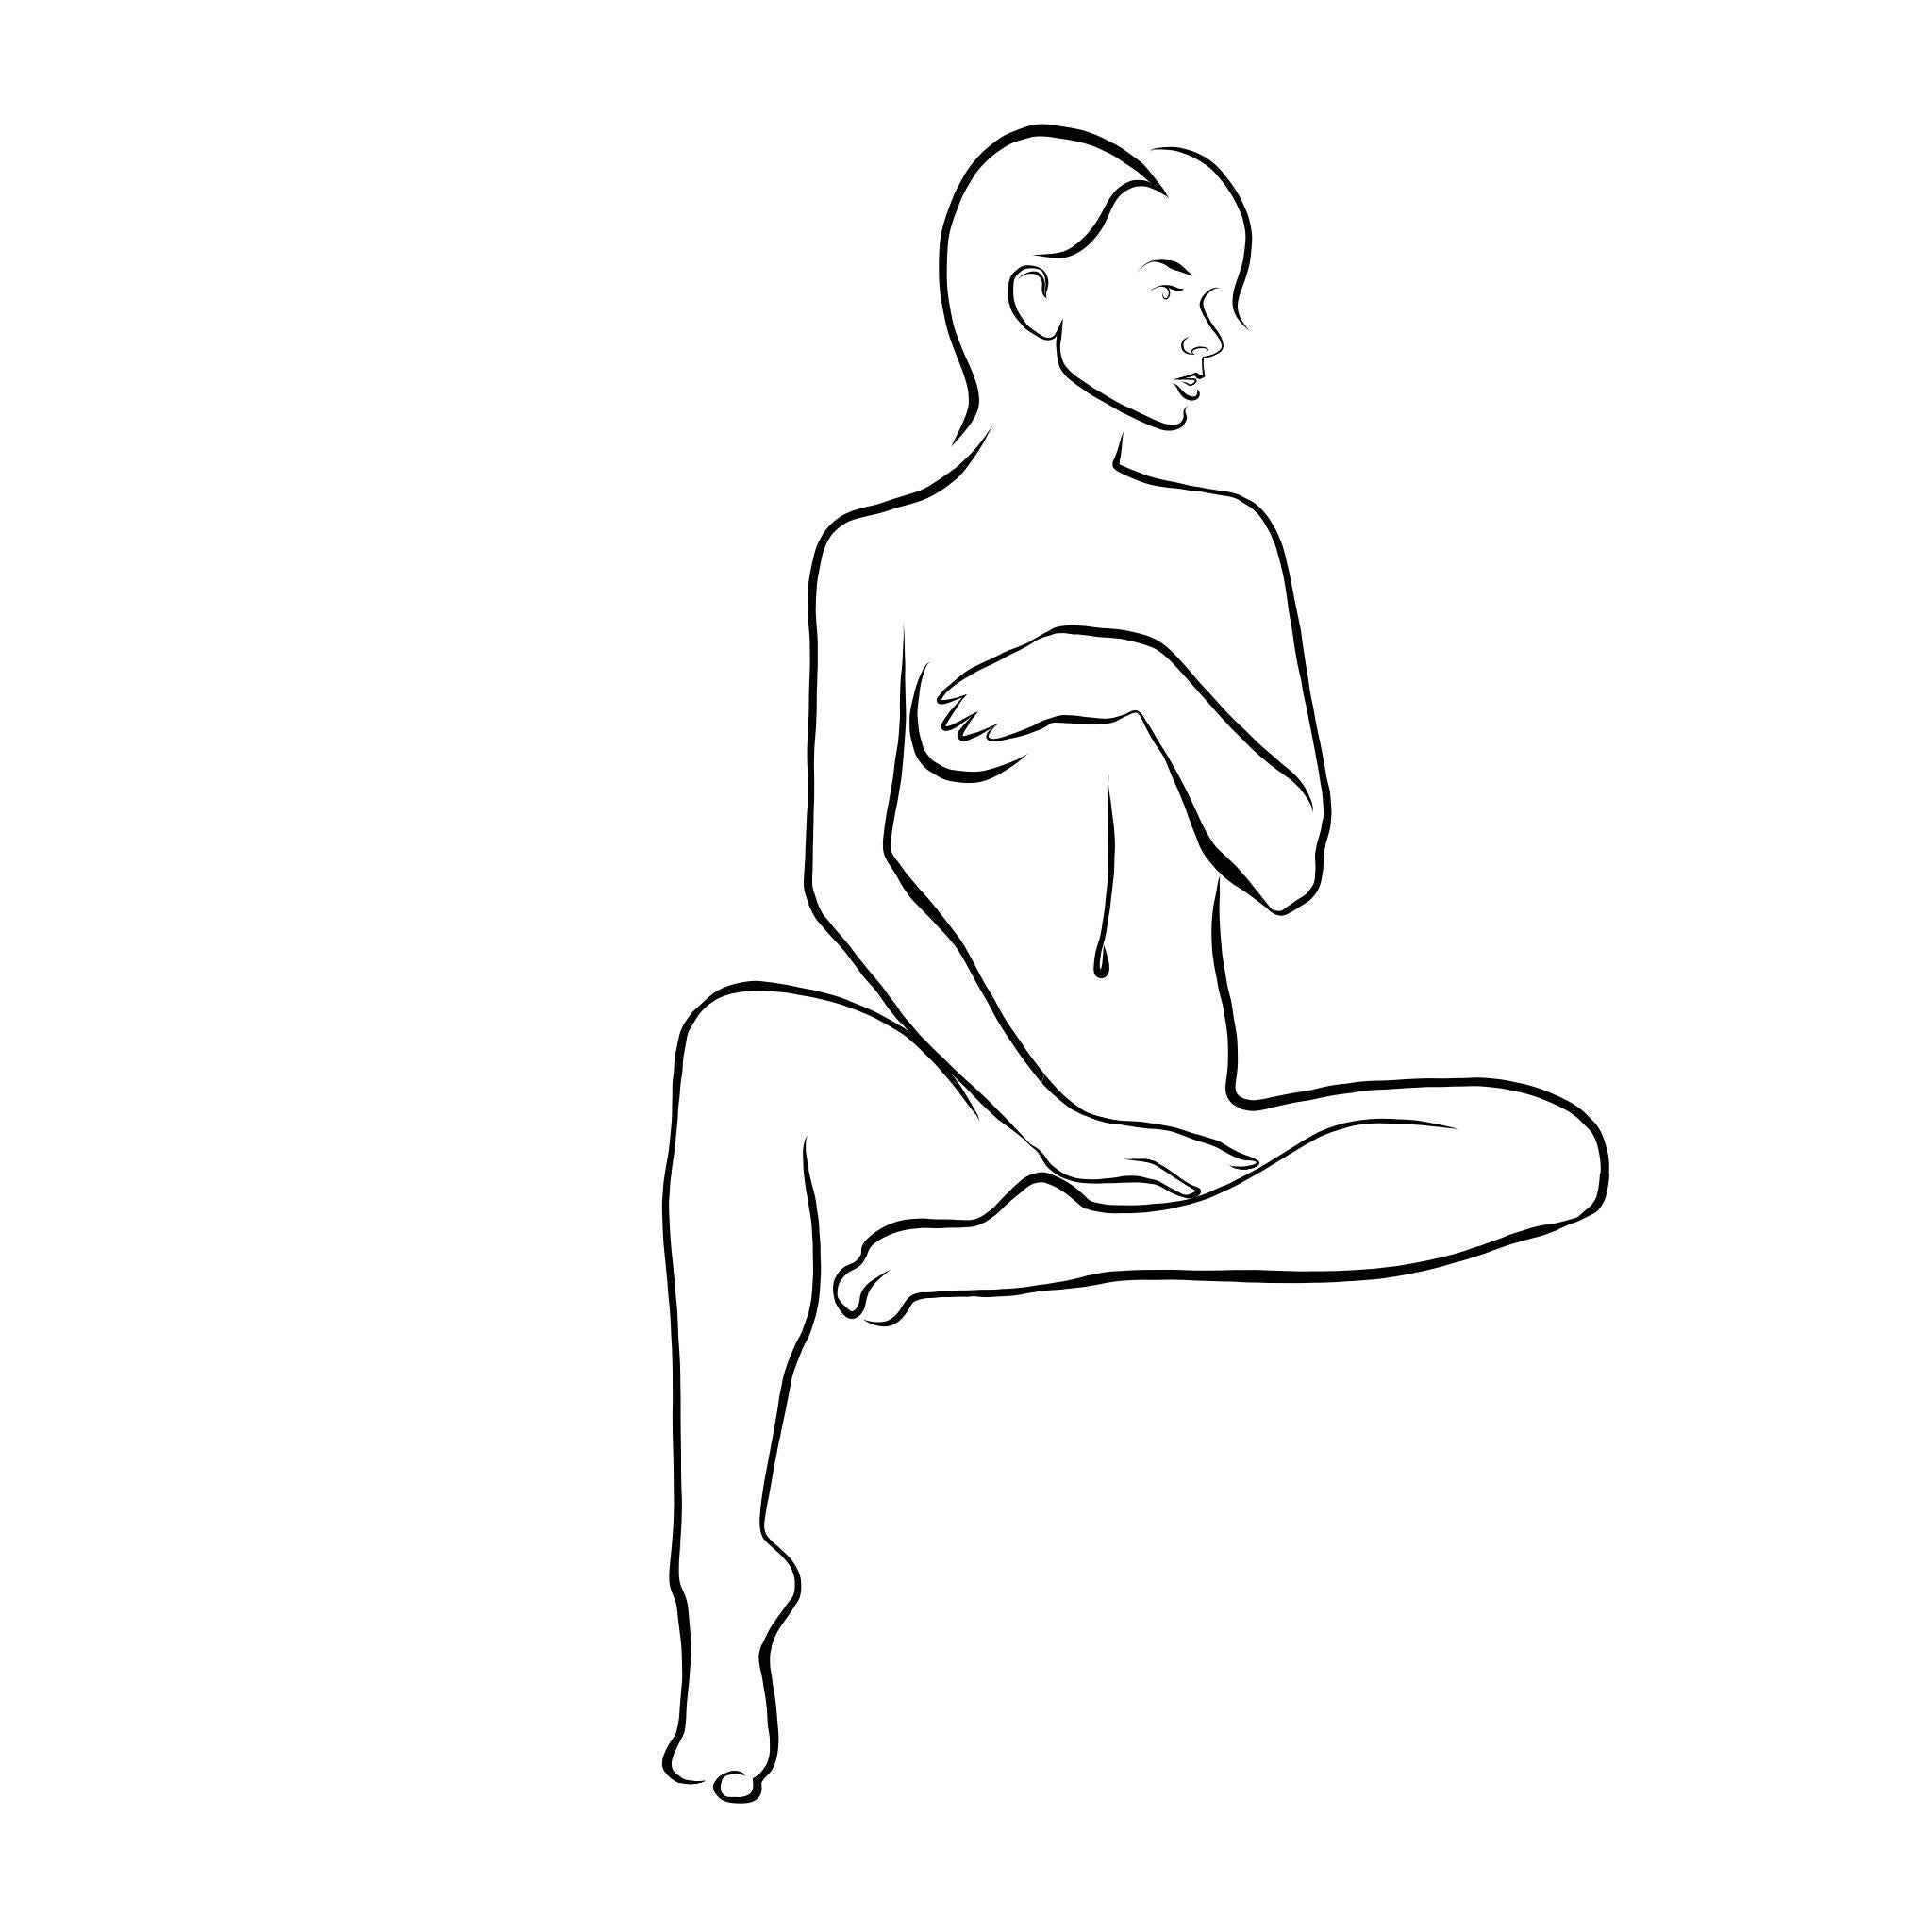 Haiku n°54, 1/50, dessin numérique représentant une femme nue et un nu féminin, cheveux courts